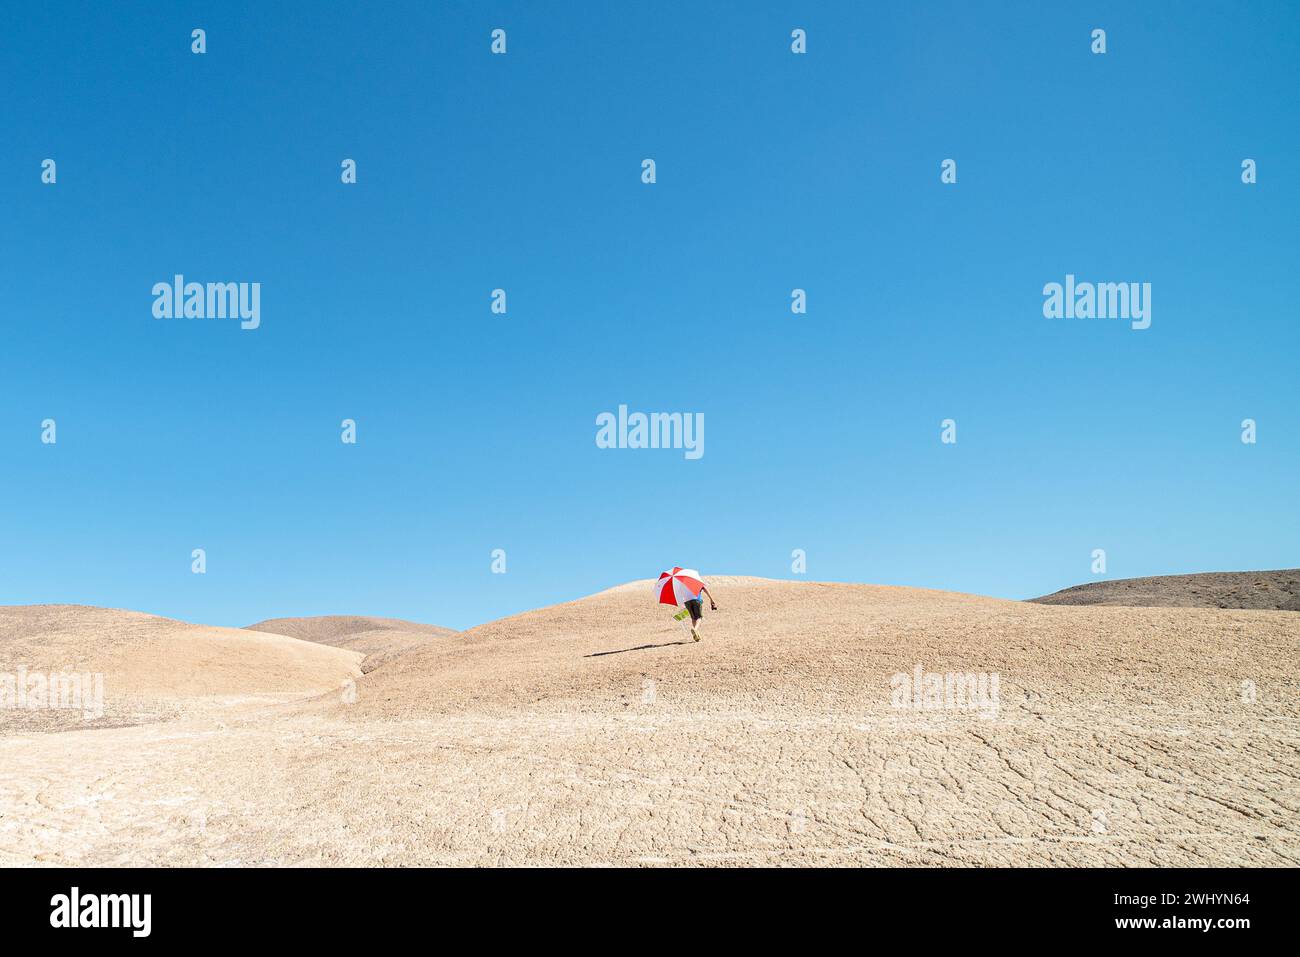 Isolé, homme, marche, Dune de sable, parapluie rouge, parapluie blanc, solitude, paysage du désert, voyage, aventure Banque D'Images